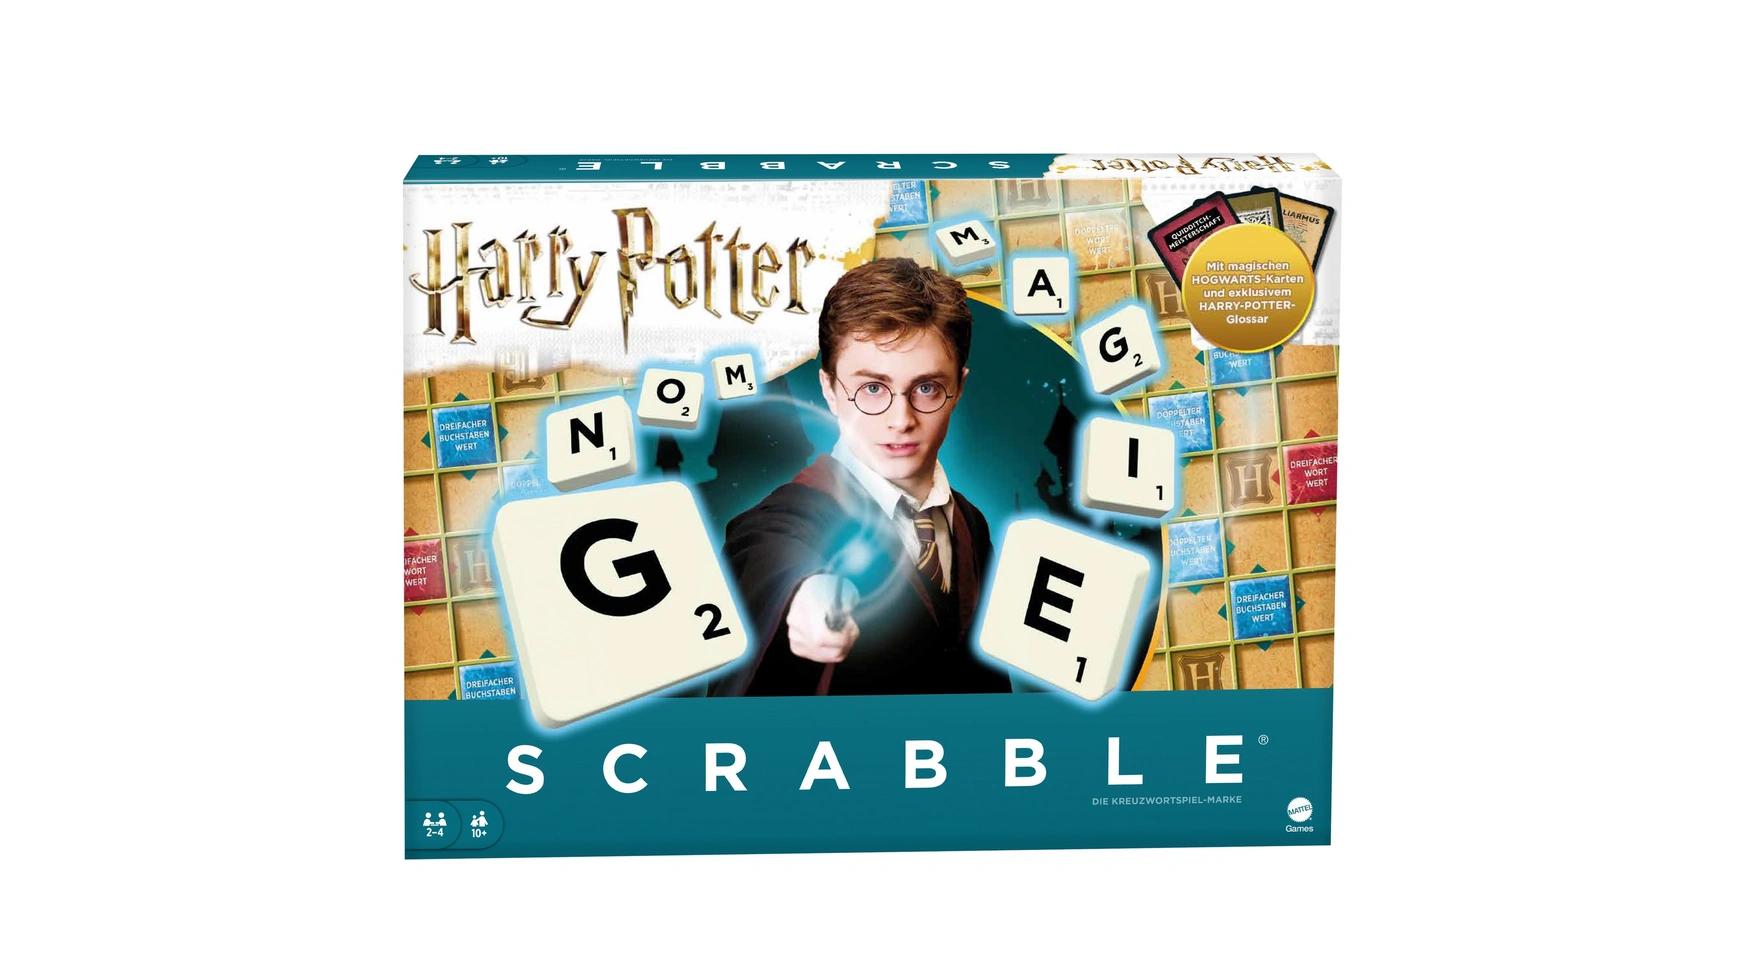 цена Mattel Games Scrabble Harry Potter, комнатная игра, настольная игра, семейная игра